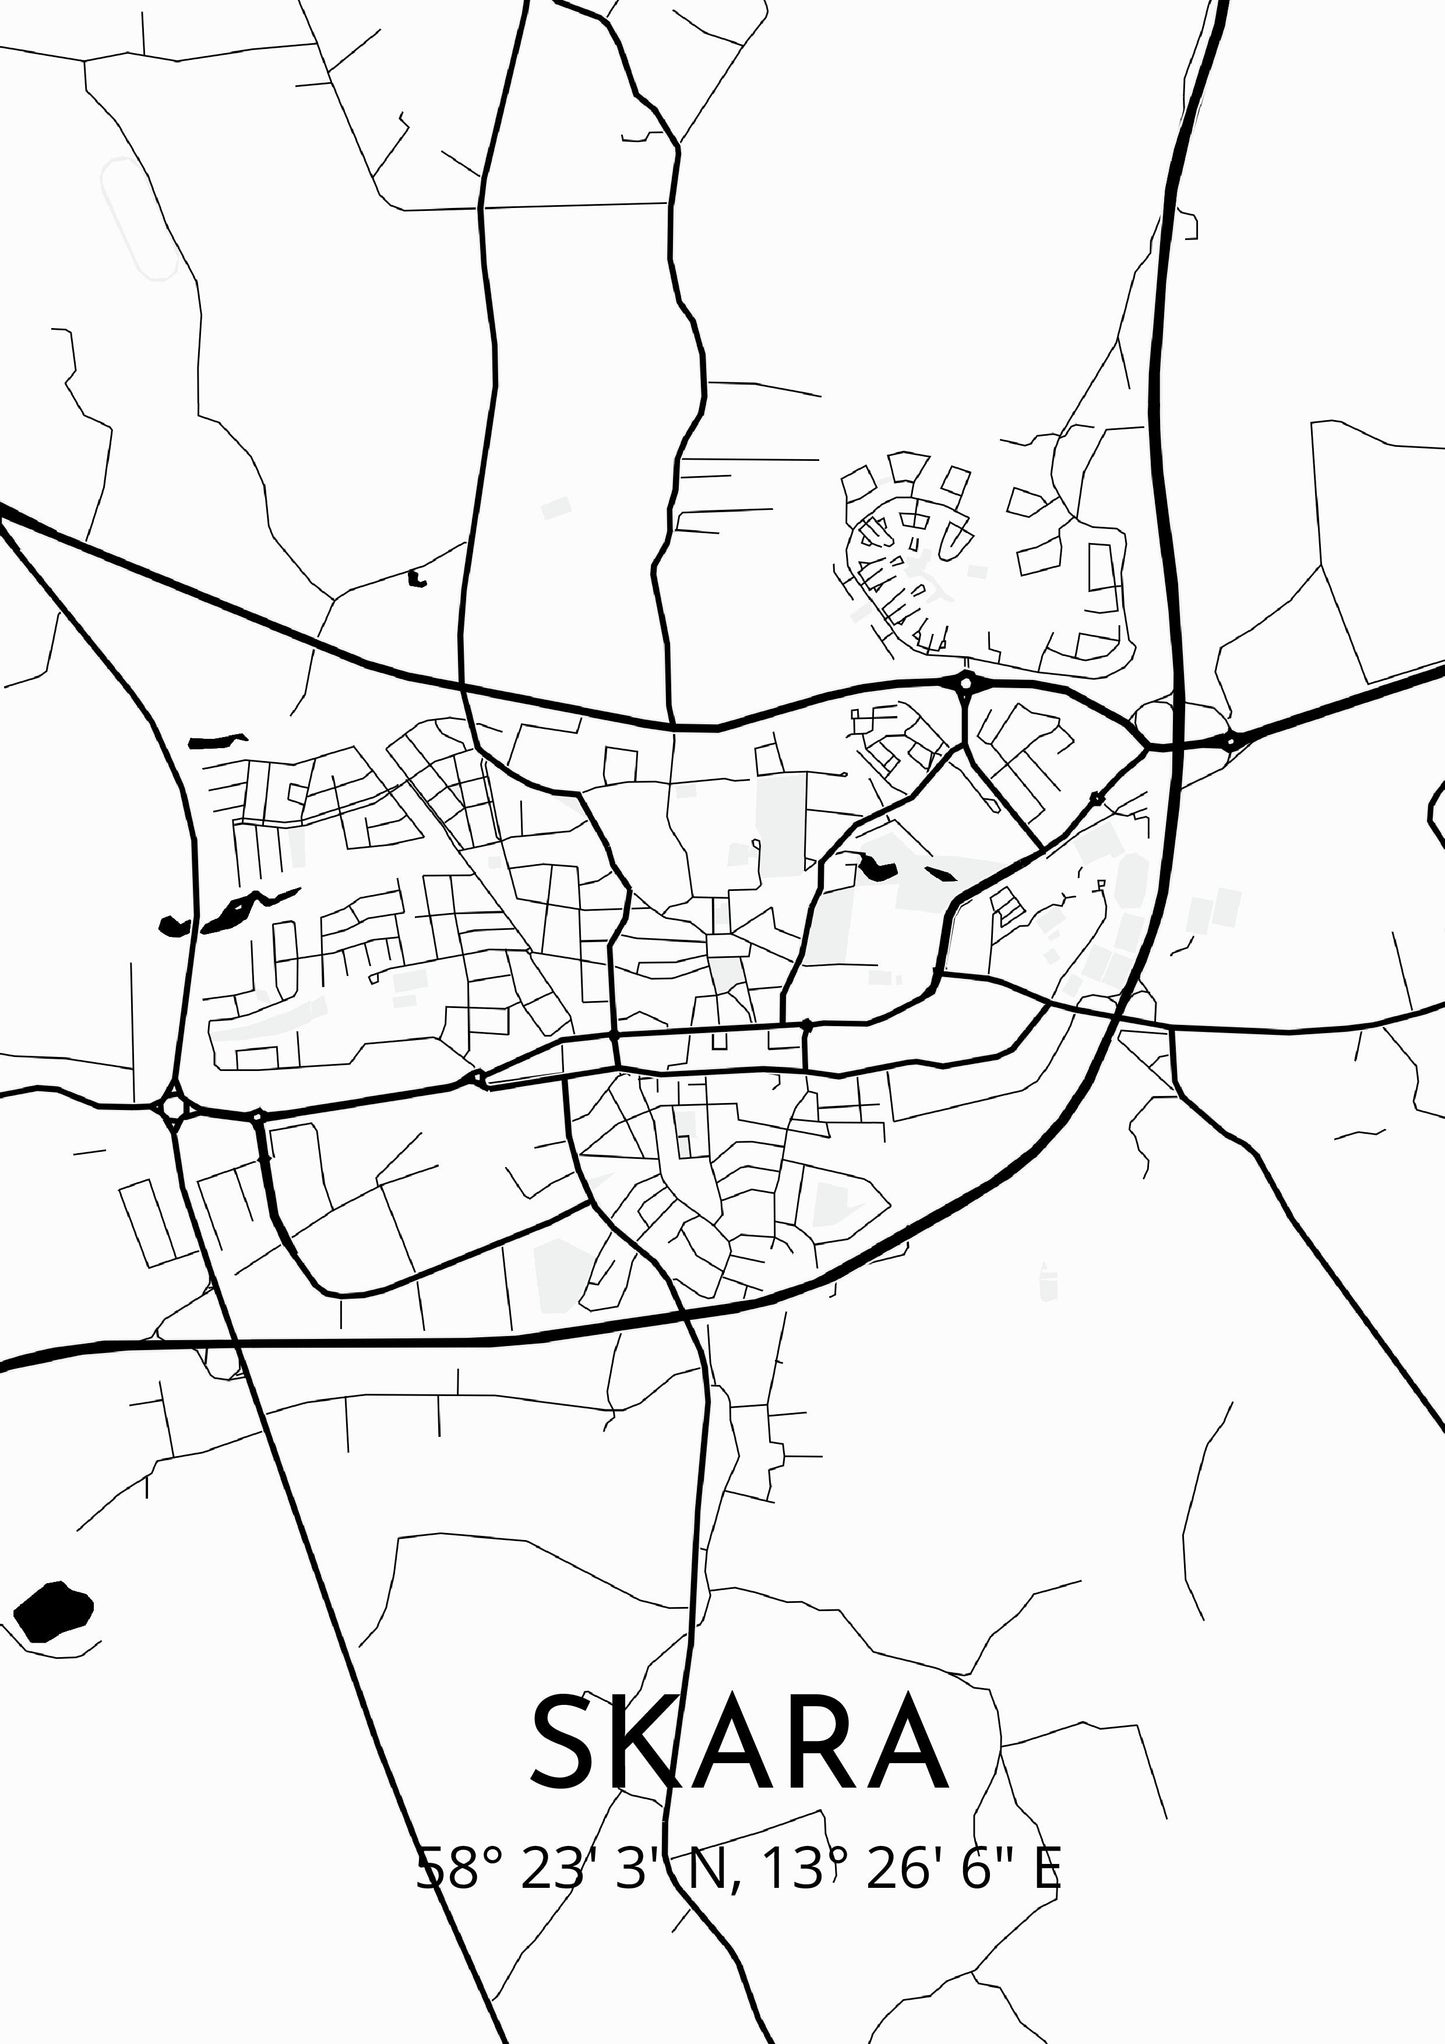 Skara